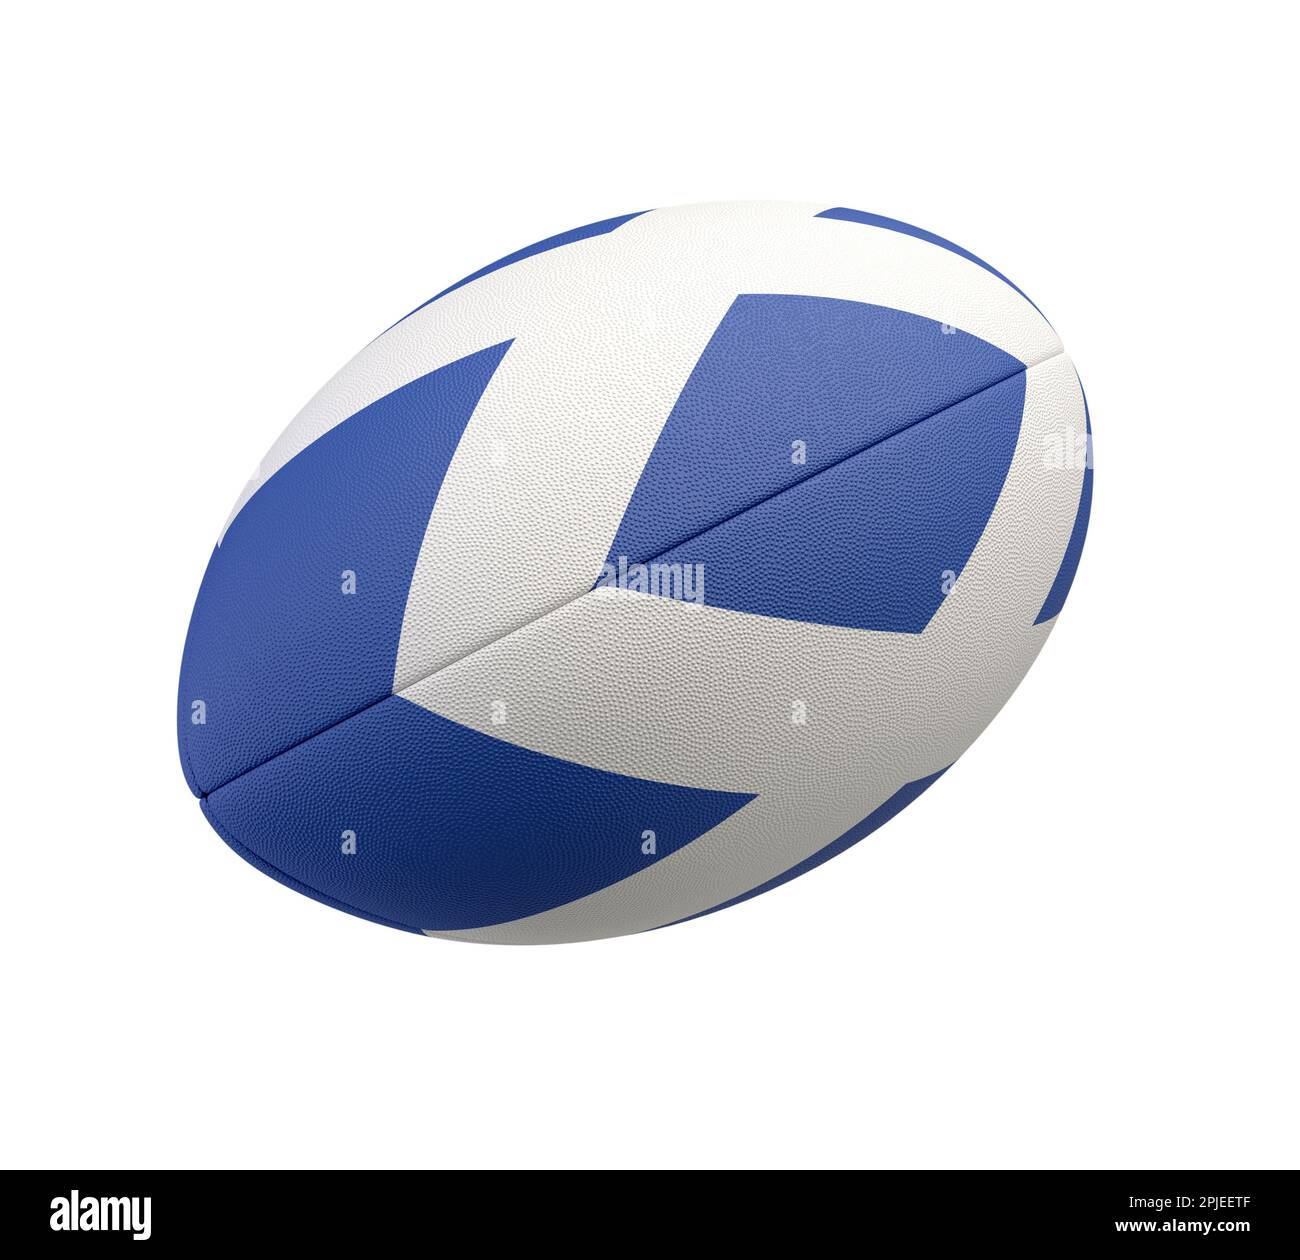 Ein weiß strukturierter Rugby-Ball mit Farbdesign, das die schottische Nationalflagge auf einem isolierten Hintergrund darstellt - 3D-Rendering Stockfoto